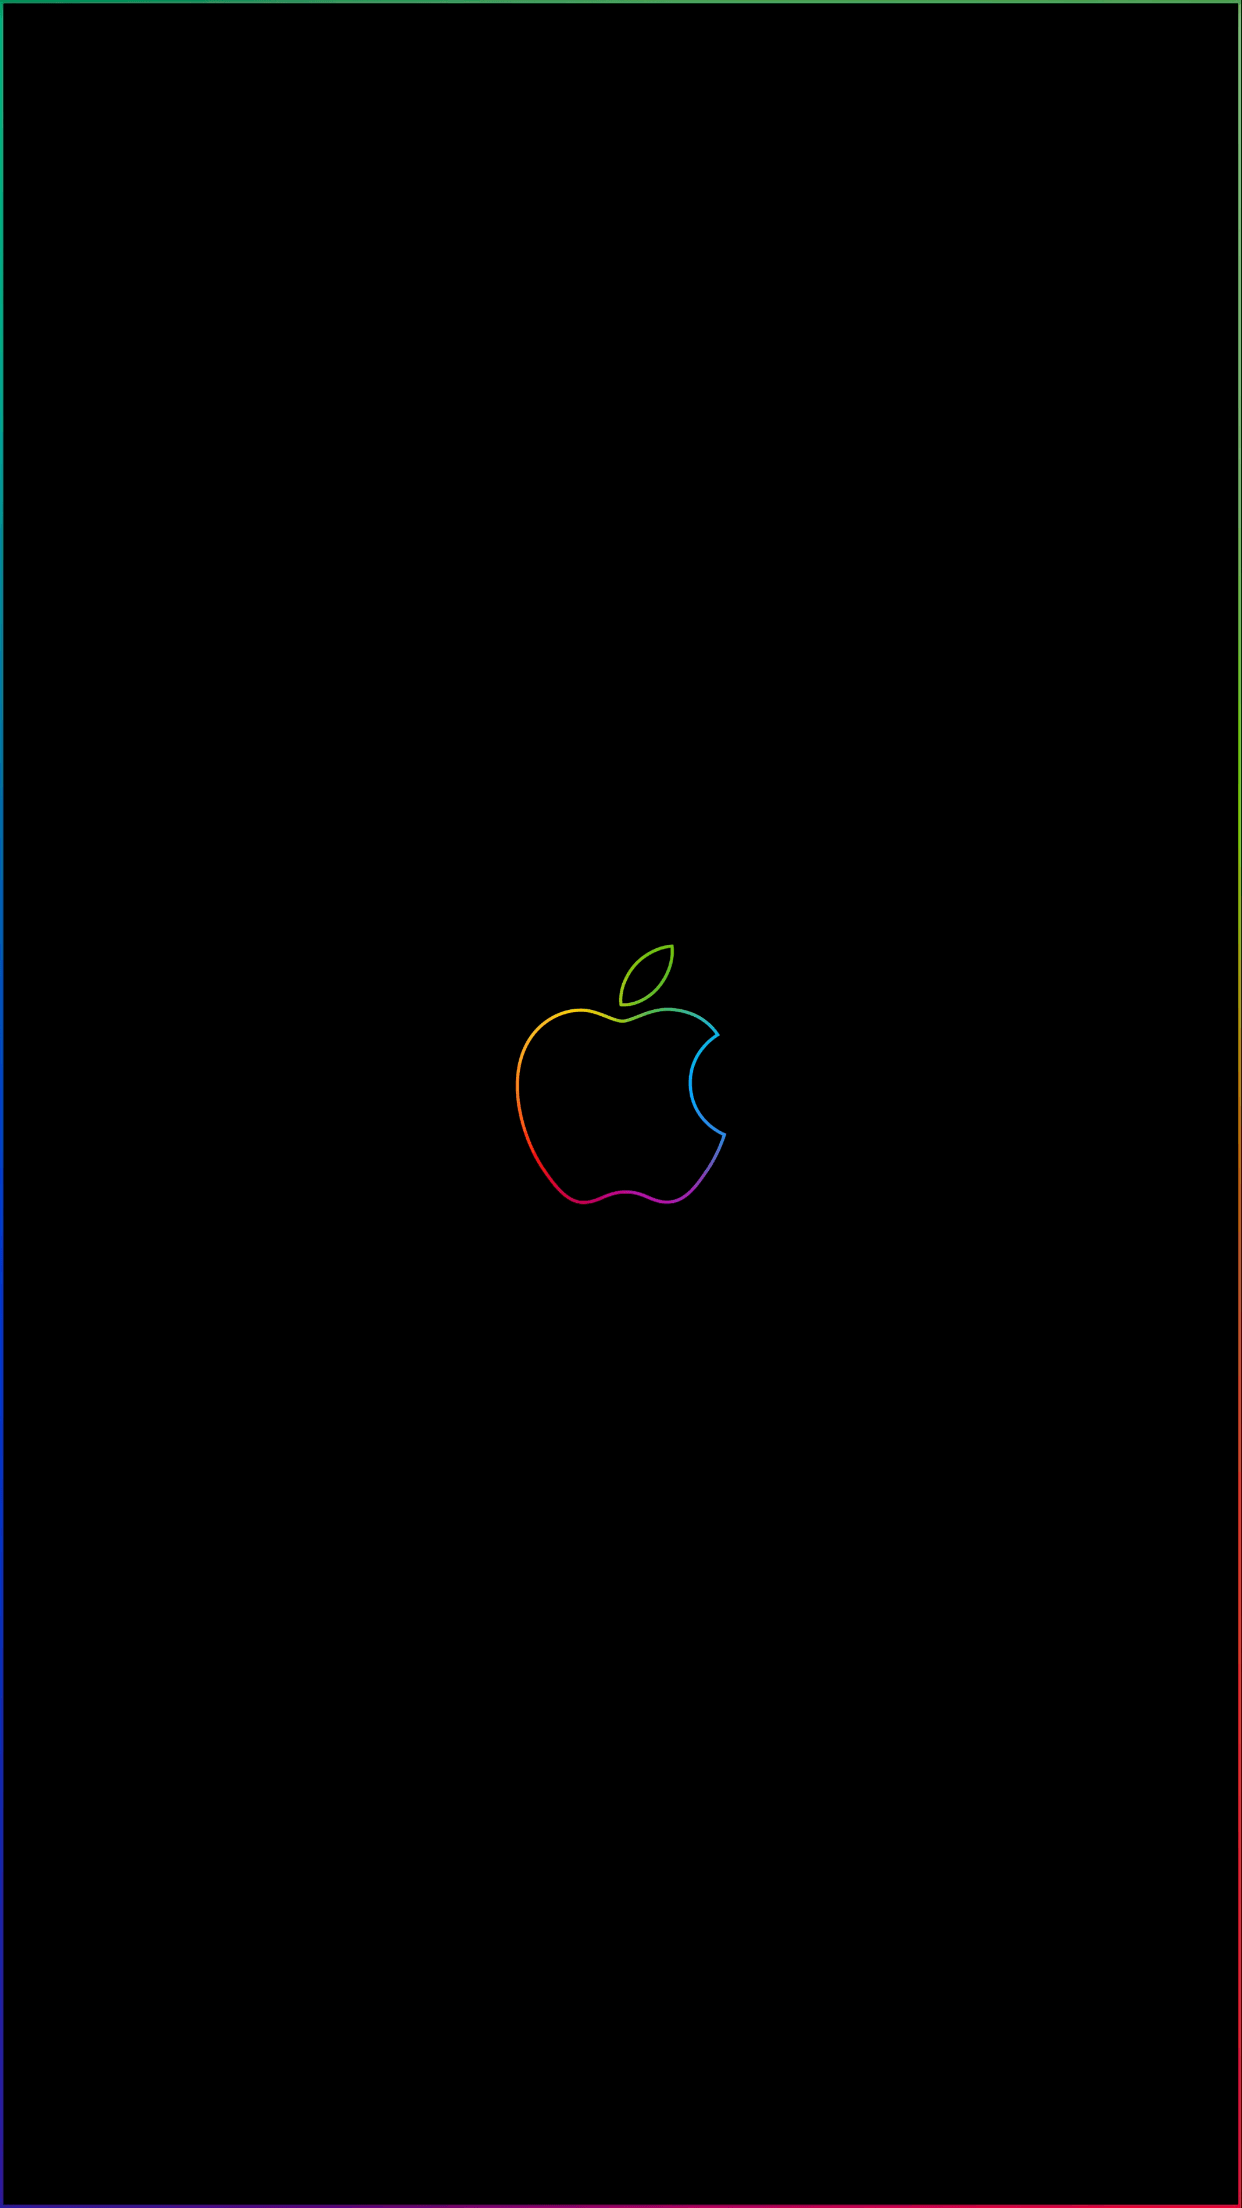 200 Apple Logo Iphone Wallpapers  Wallpaperscom